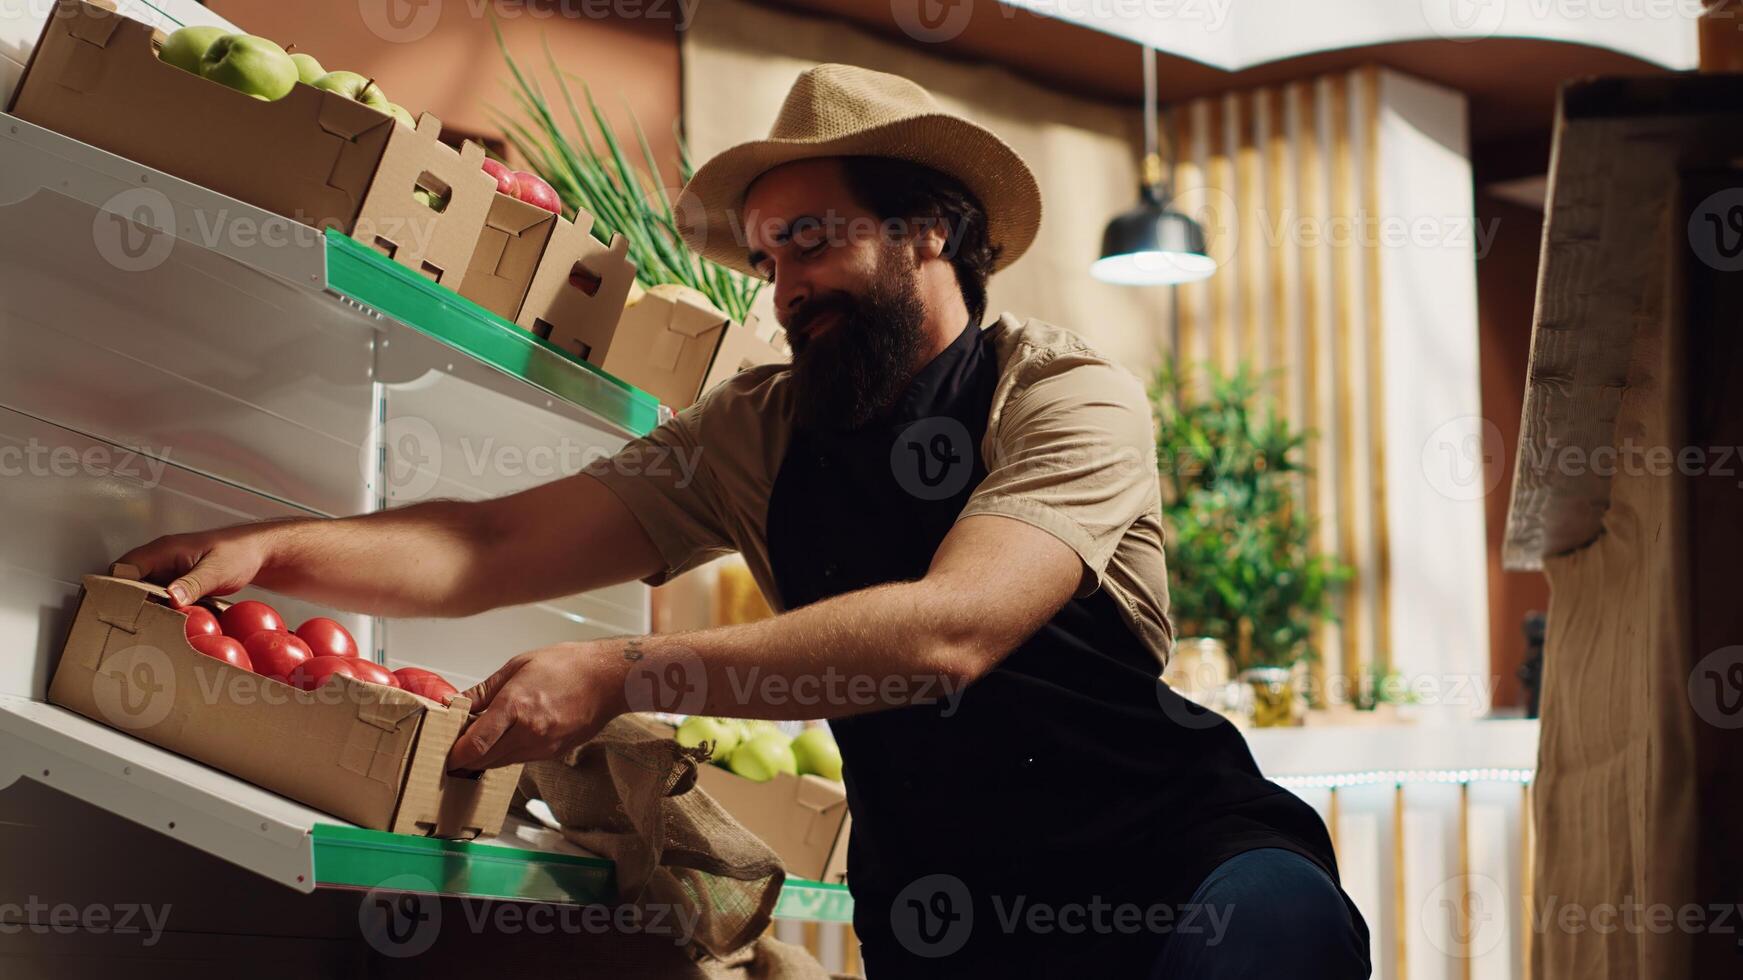 jordbrukare föra lådor av färsk producera, återuppbyggnad lokal- grannskap matvaror affär med grönsaker från hans egen odla. näringsidkare levererar noll avfall Lagra med naturlig mat, framställning klient Lycklig foto